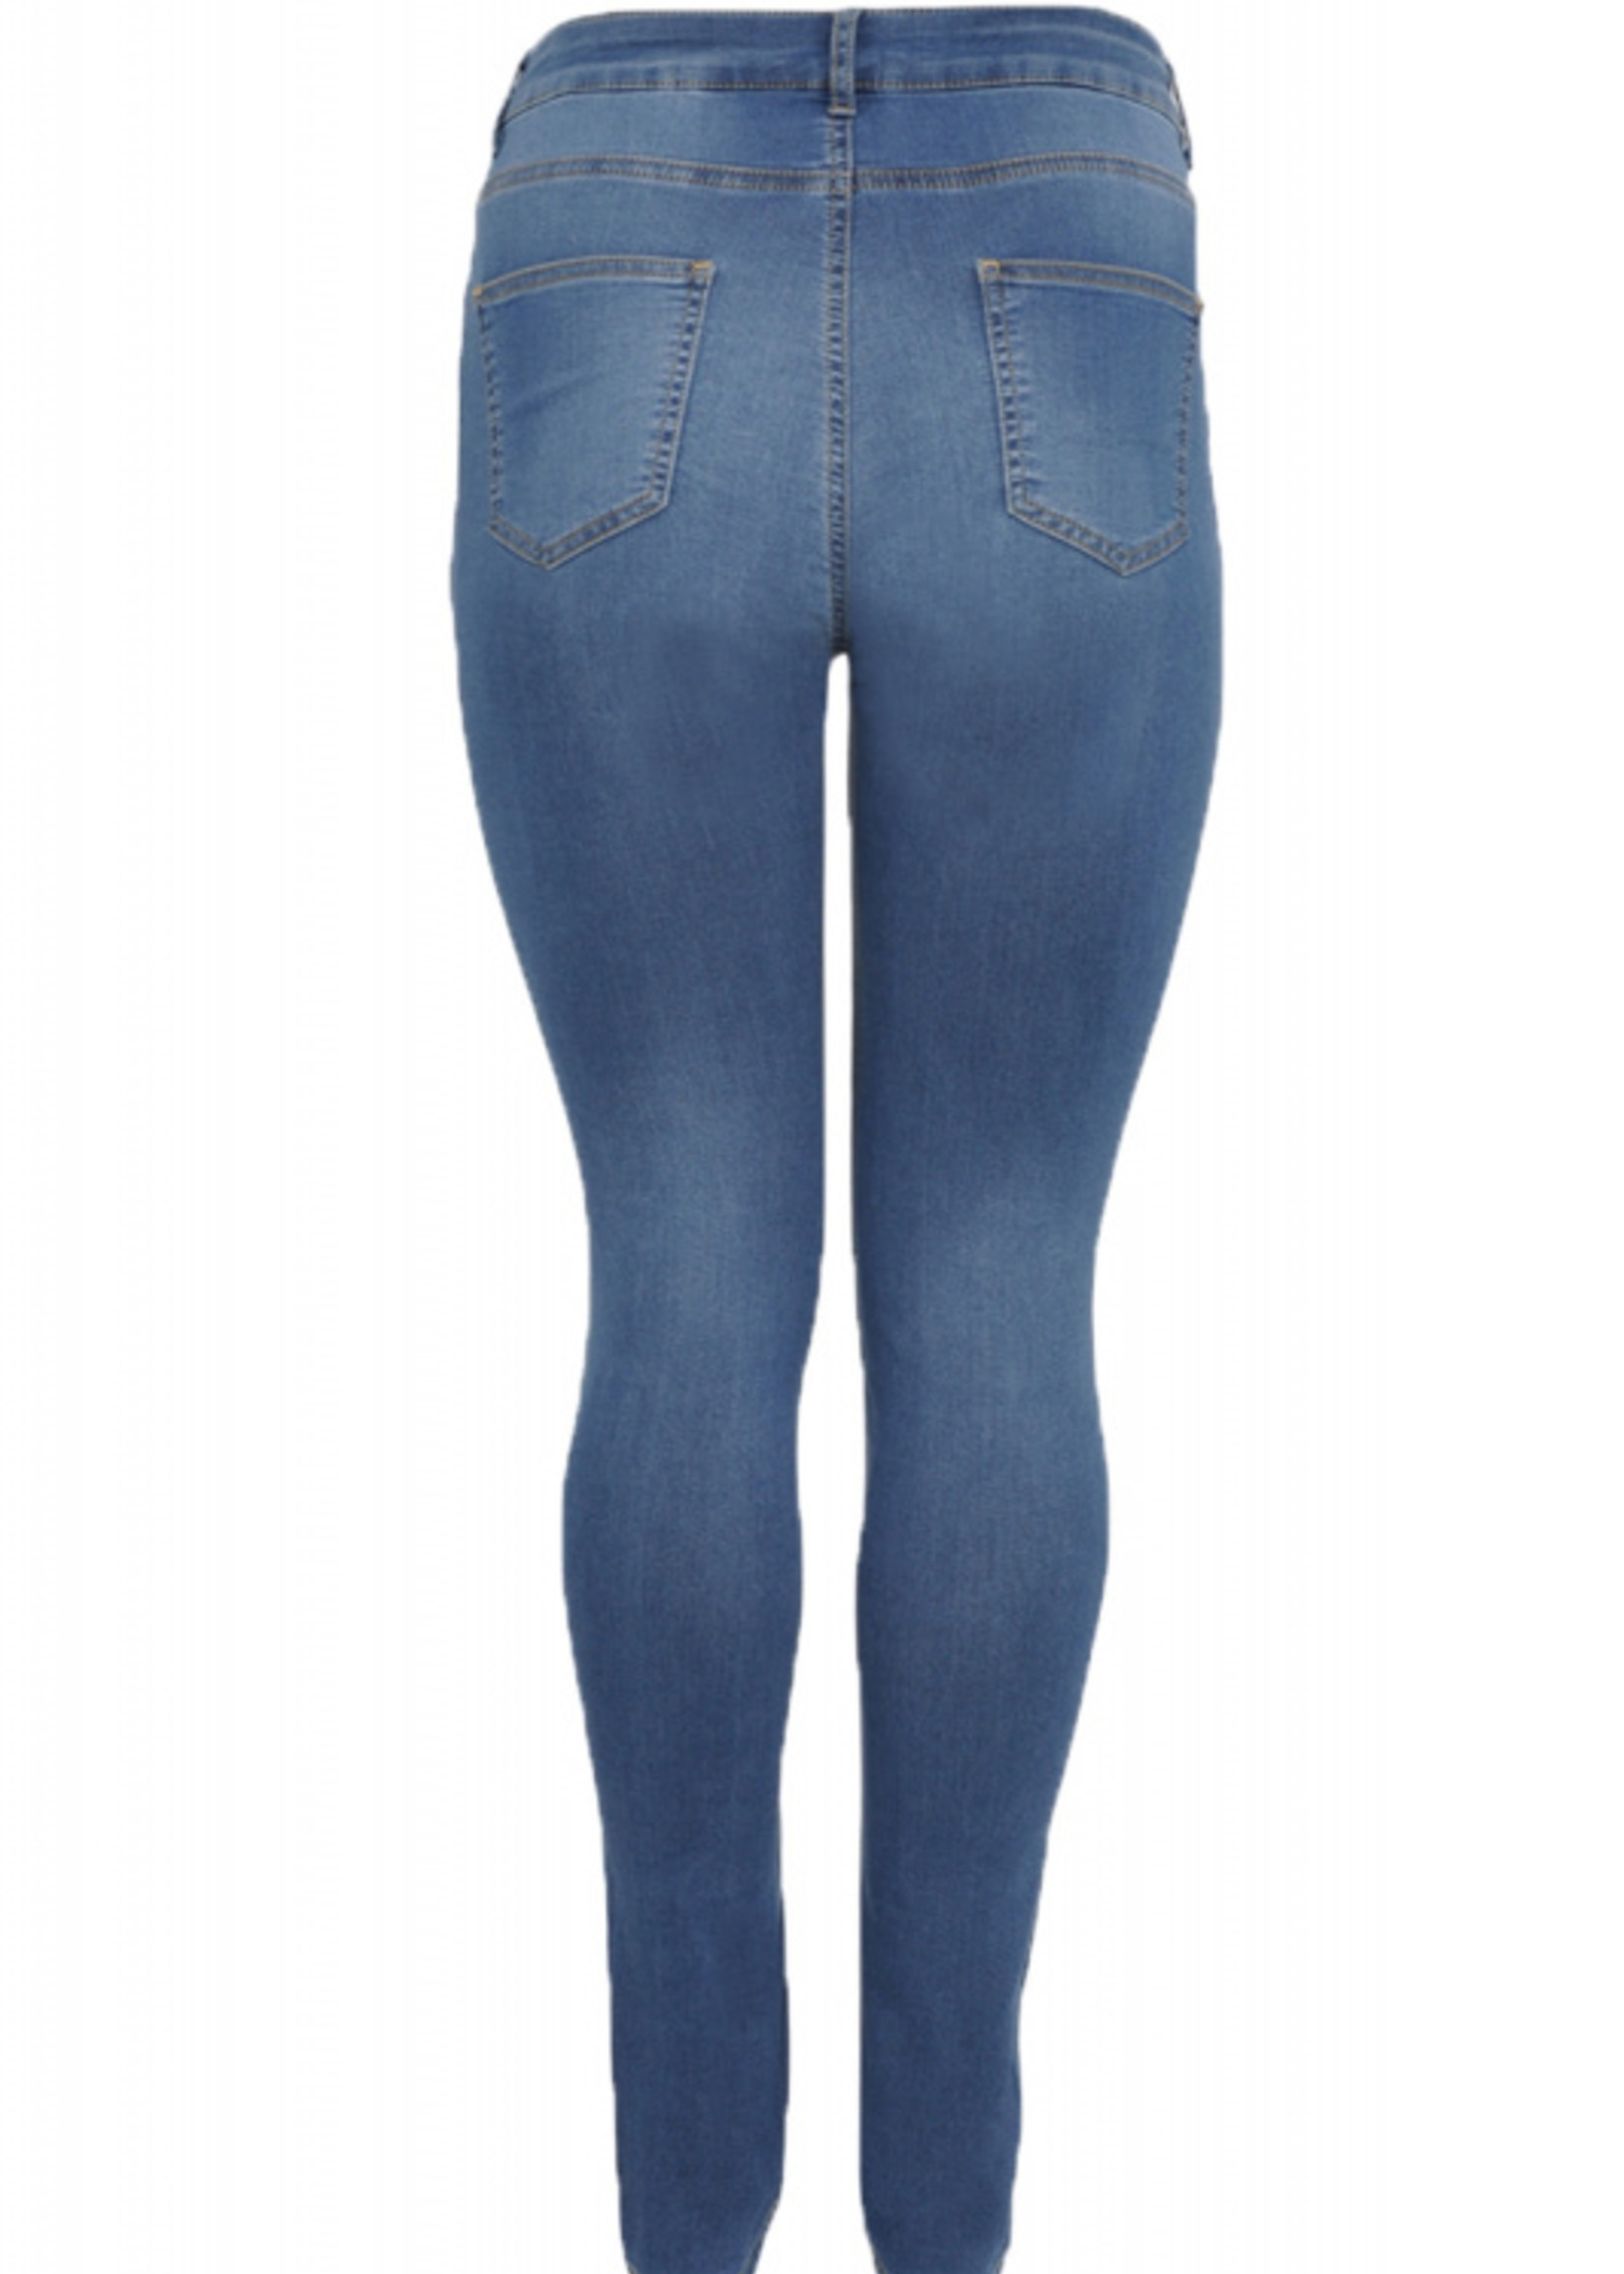 Yoek B5517L jeans lang